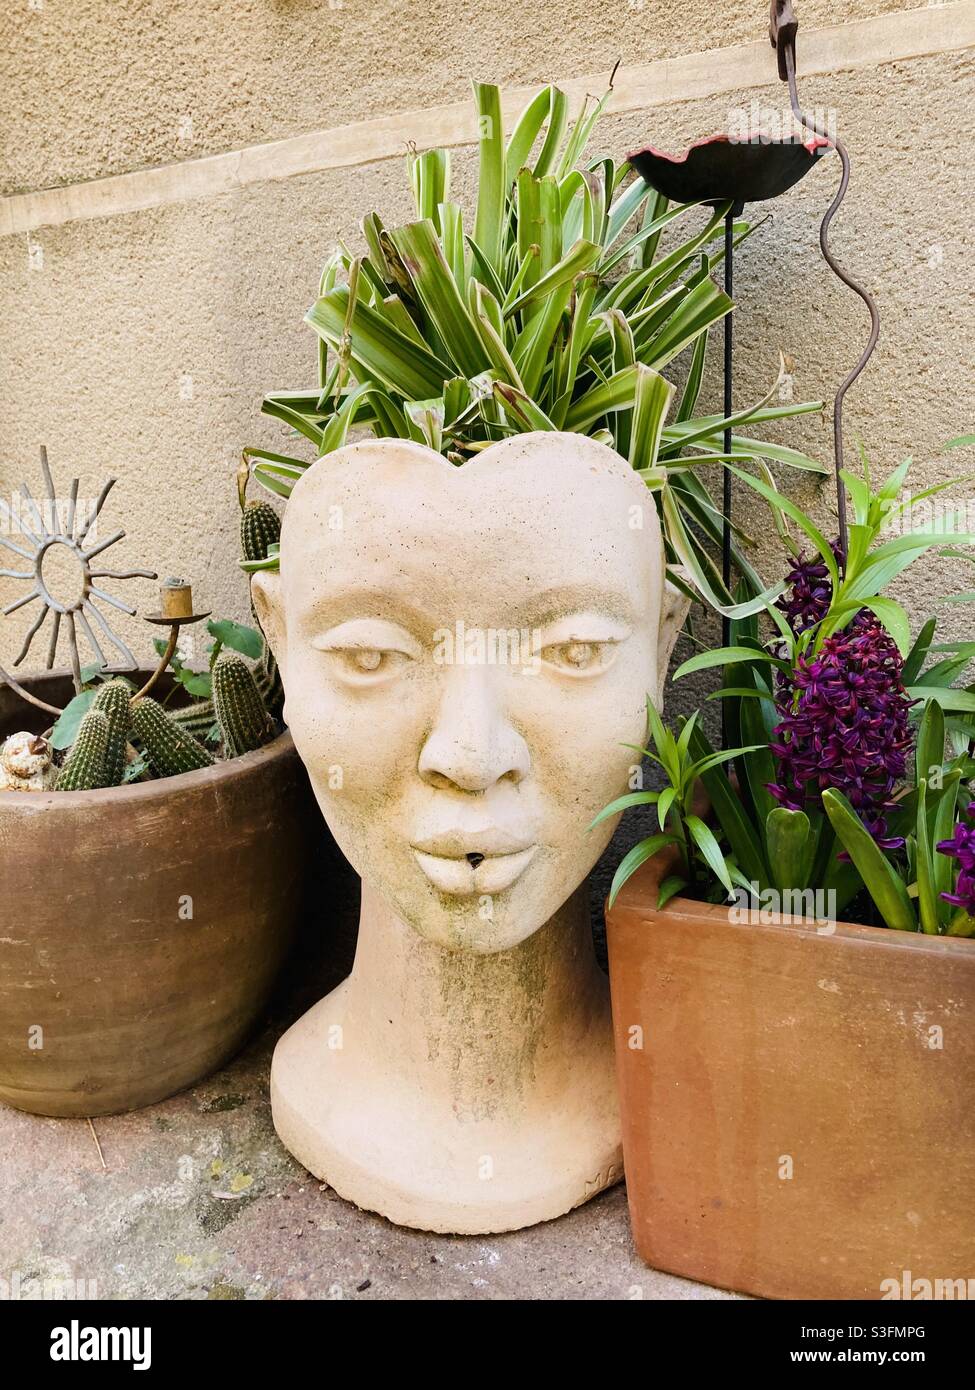 que de jolie et originale déco qui sert de pot pour des plantes ou des fleurs .village varois -avril 2021 Stock Photo